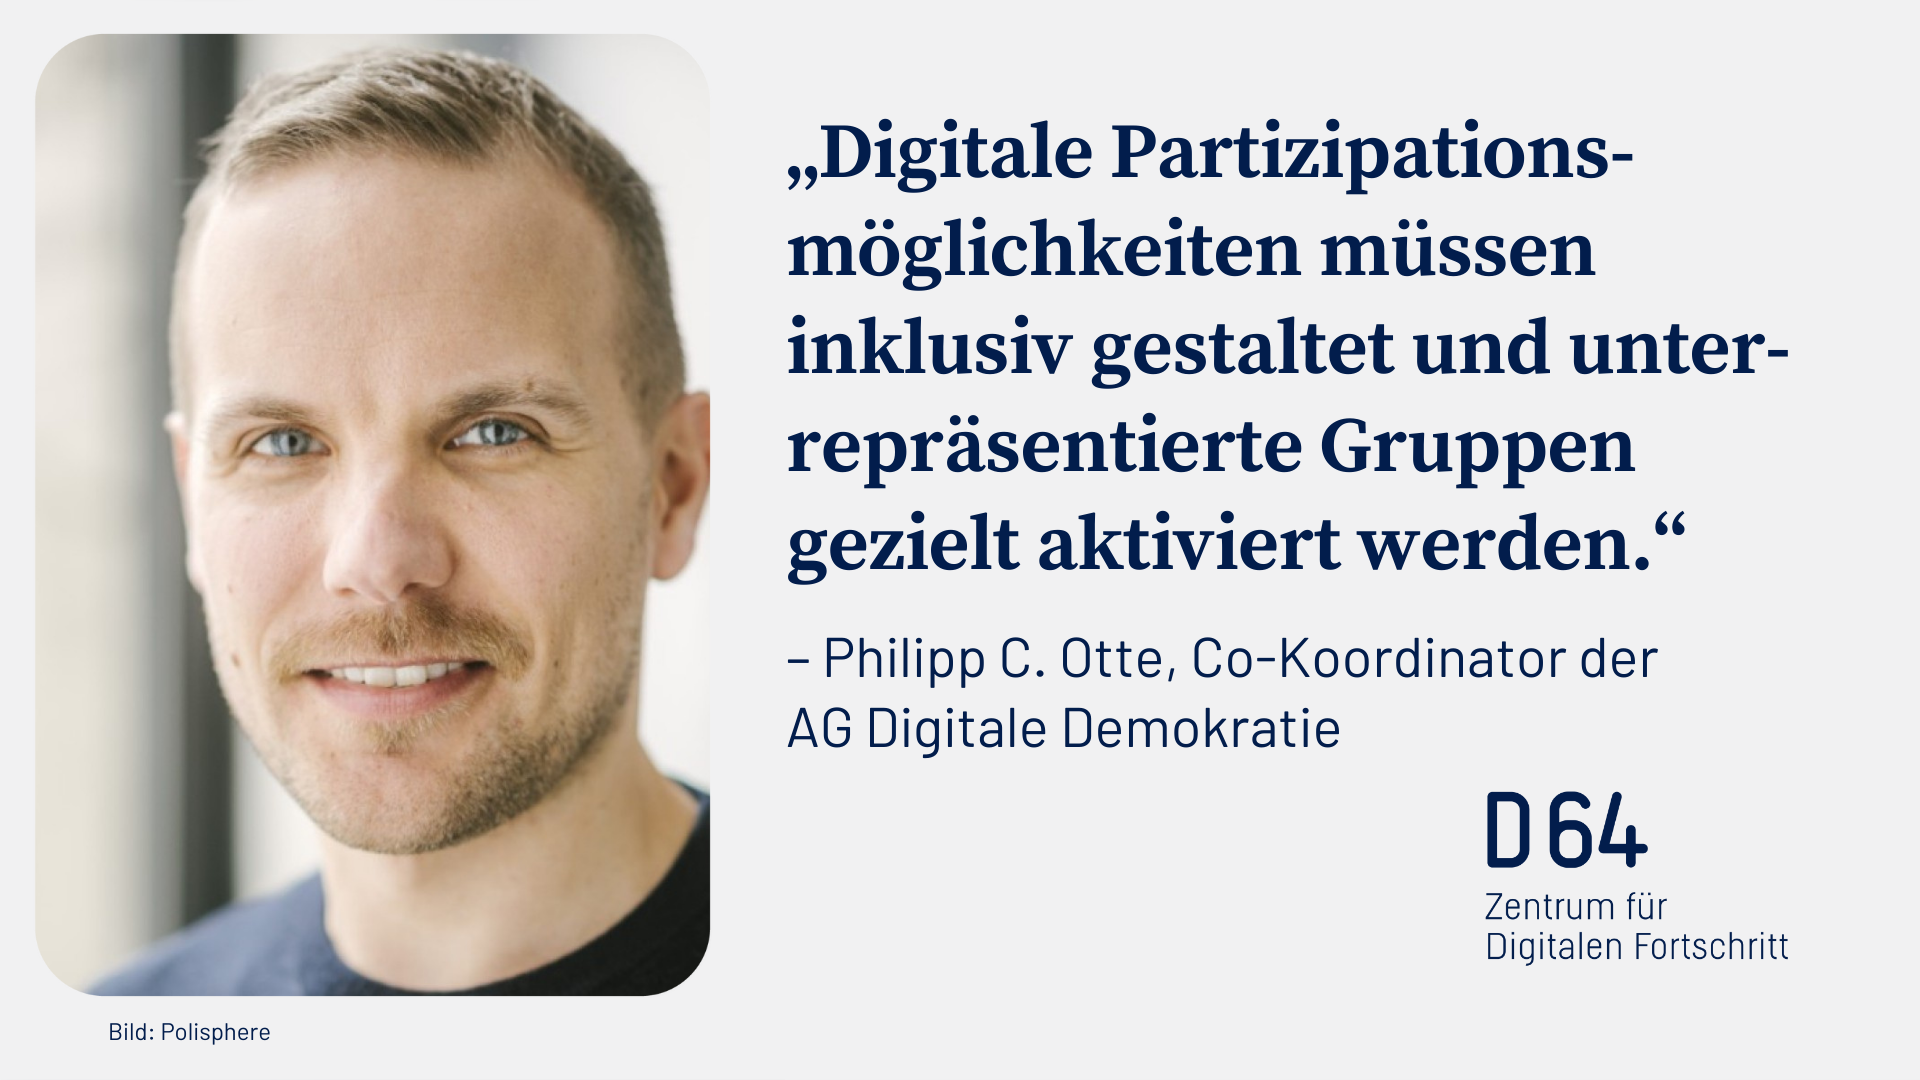 "Digitale Partizipationsmöglichkeiten müssen inklusiv gestaltet und unterrepräsentierte Gruppen gezielt aktiviert werden." Philipp C. Otte, Co-Koordinator der AG Digitale Demokratie